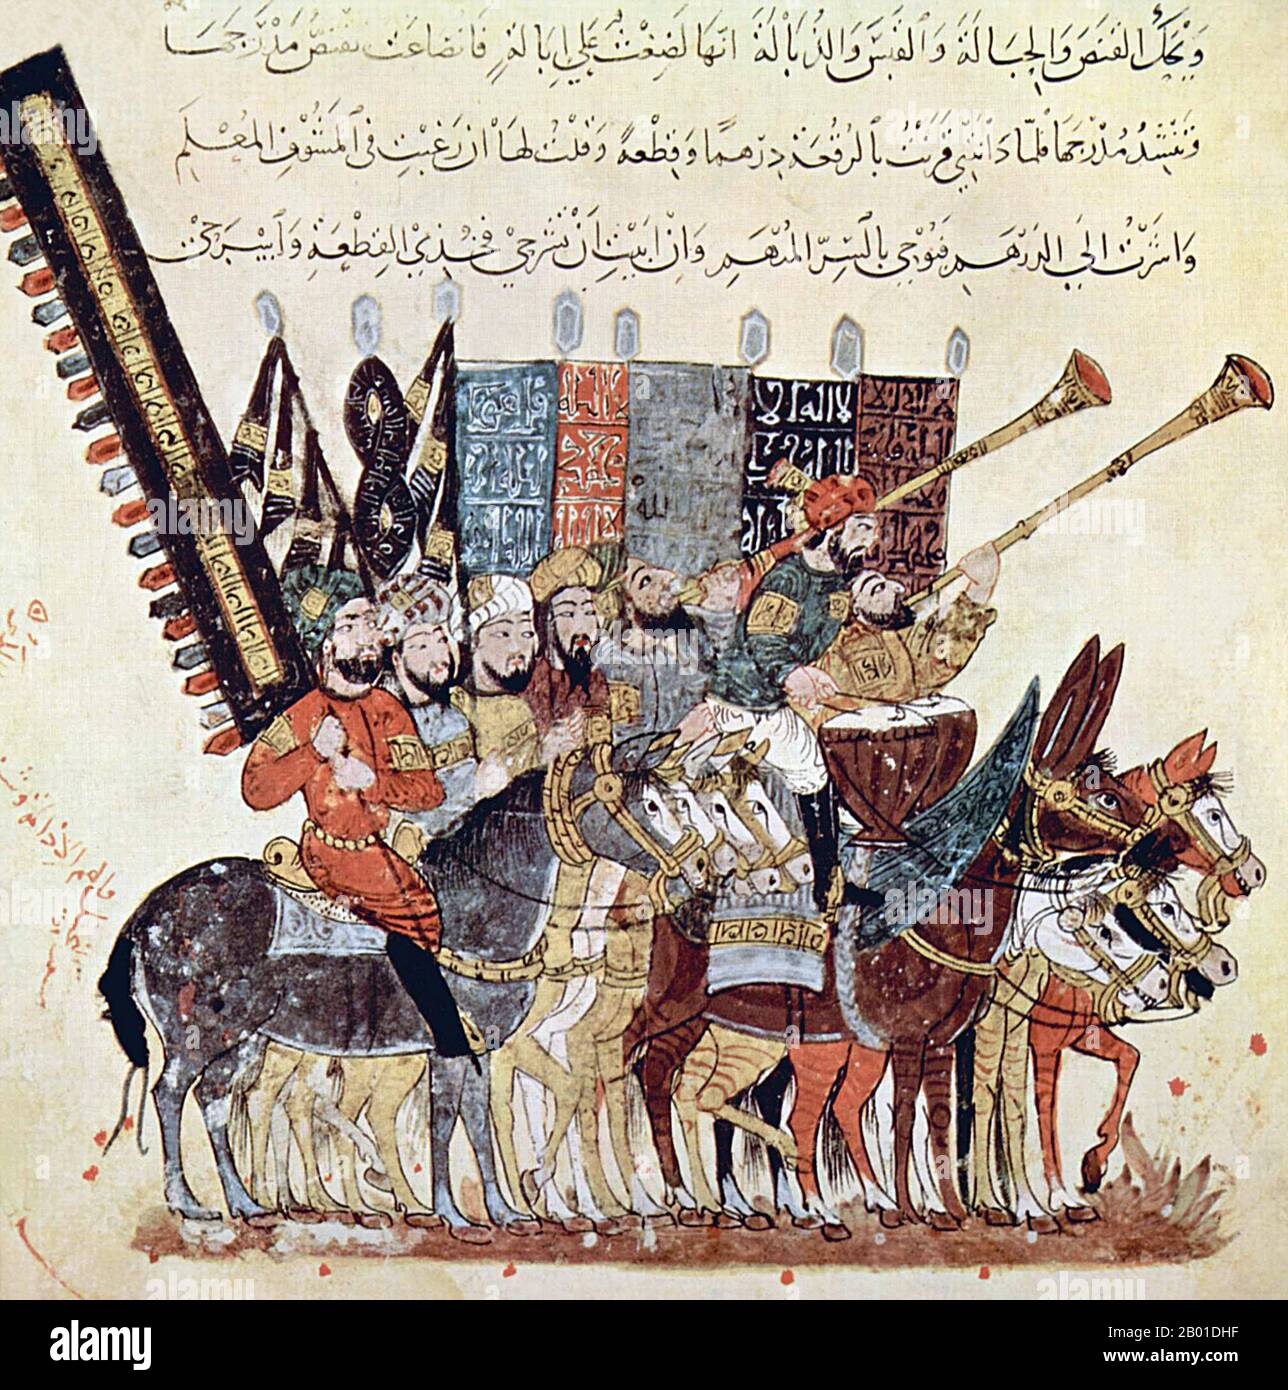 Irak/Arabien: Verkündet den Feiertag von 'ID al-Fitr, der das Ende des Heiligen Monats Ramadan markiert. Miniatur von Yahya ibn Mahmud al-Wasiti (FL. 13.. Jahrhundert), 1237 CE. Yahyâ ibn Mahmûd al-Wâsitî war ein arabischer islamischer Künstler des 13.. Jahrhunderts. Al-Wasiti wurde in Wasit im Südirak geboren. Er war bekannt für seine Illustrationen des Maqam von al-Hariri. Maqāma (wörtlich „Assemblys“) sind ein (ursprünglich) arabisches literarisches Genre der reimten Prosa mit Intervallen der Poesie, in denen rhetorische Extravaganz auffällt. Der Autor Badī al-Zaman al-Hamadhāni aus dem 10.. Jahrhundert soll die Form erfunden haben. Stockfoto